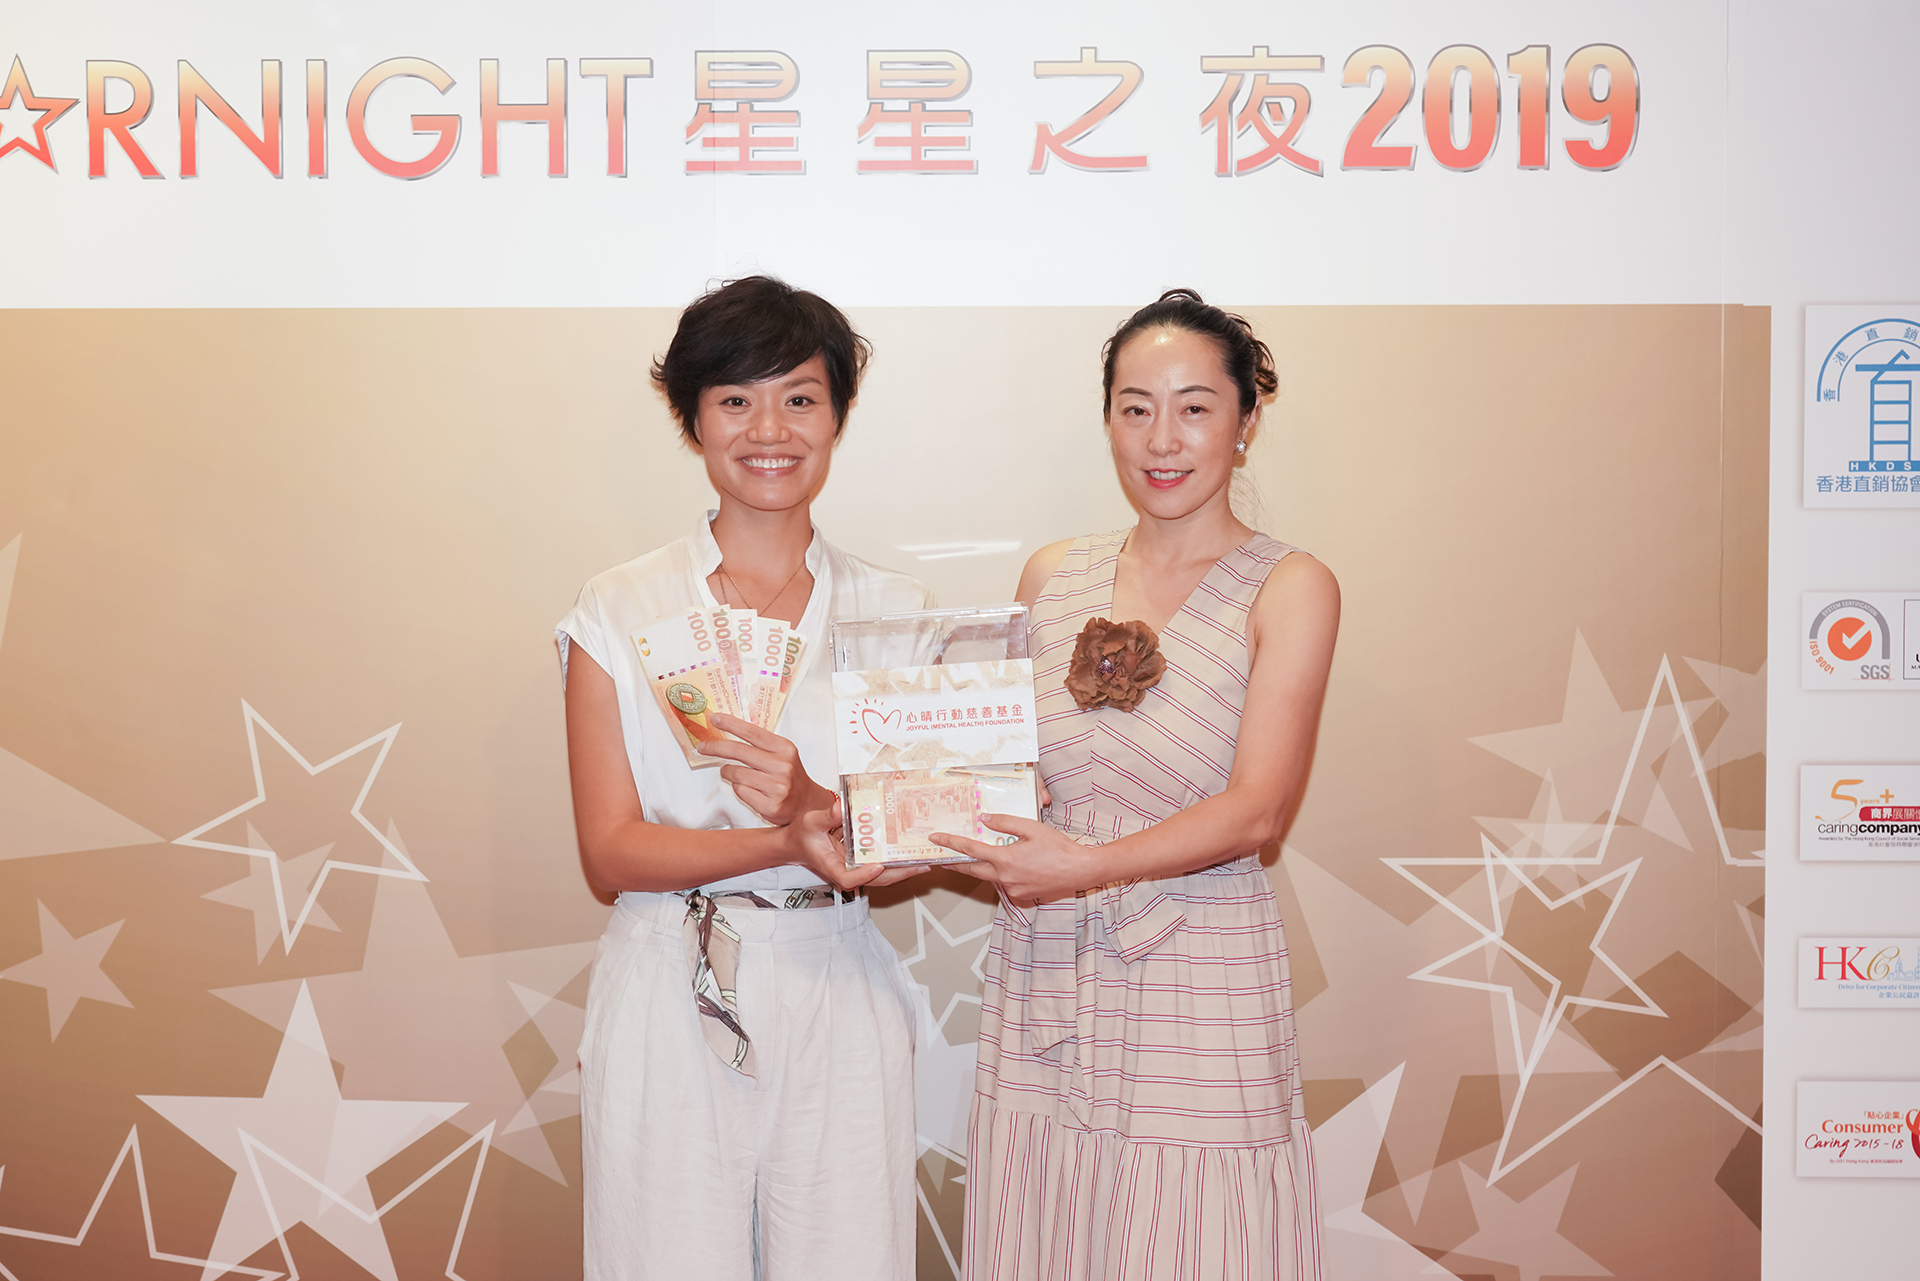 恭賀陳宛沁小姐從星級百萬富翁遊戲贏取HK$10,000獎金並與公司合共損助HK$10,000予「心晴行動慈善基金」